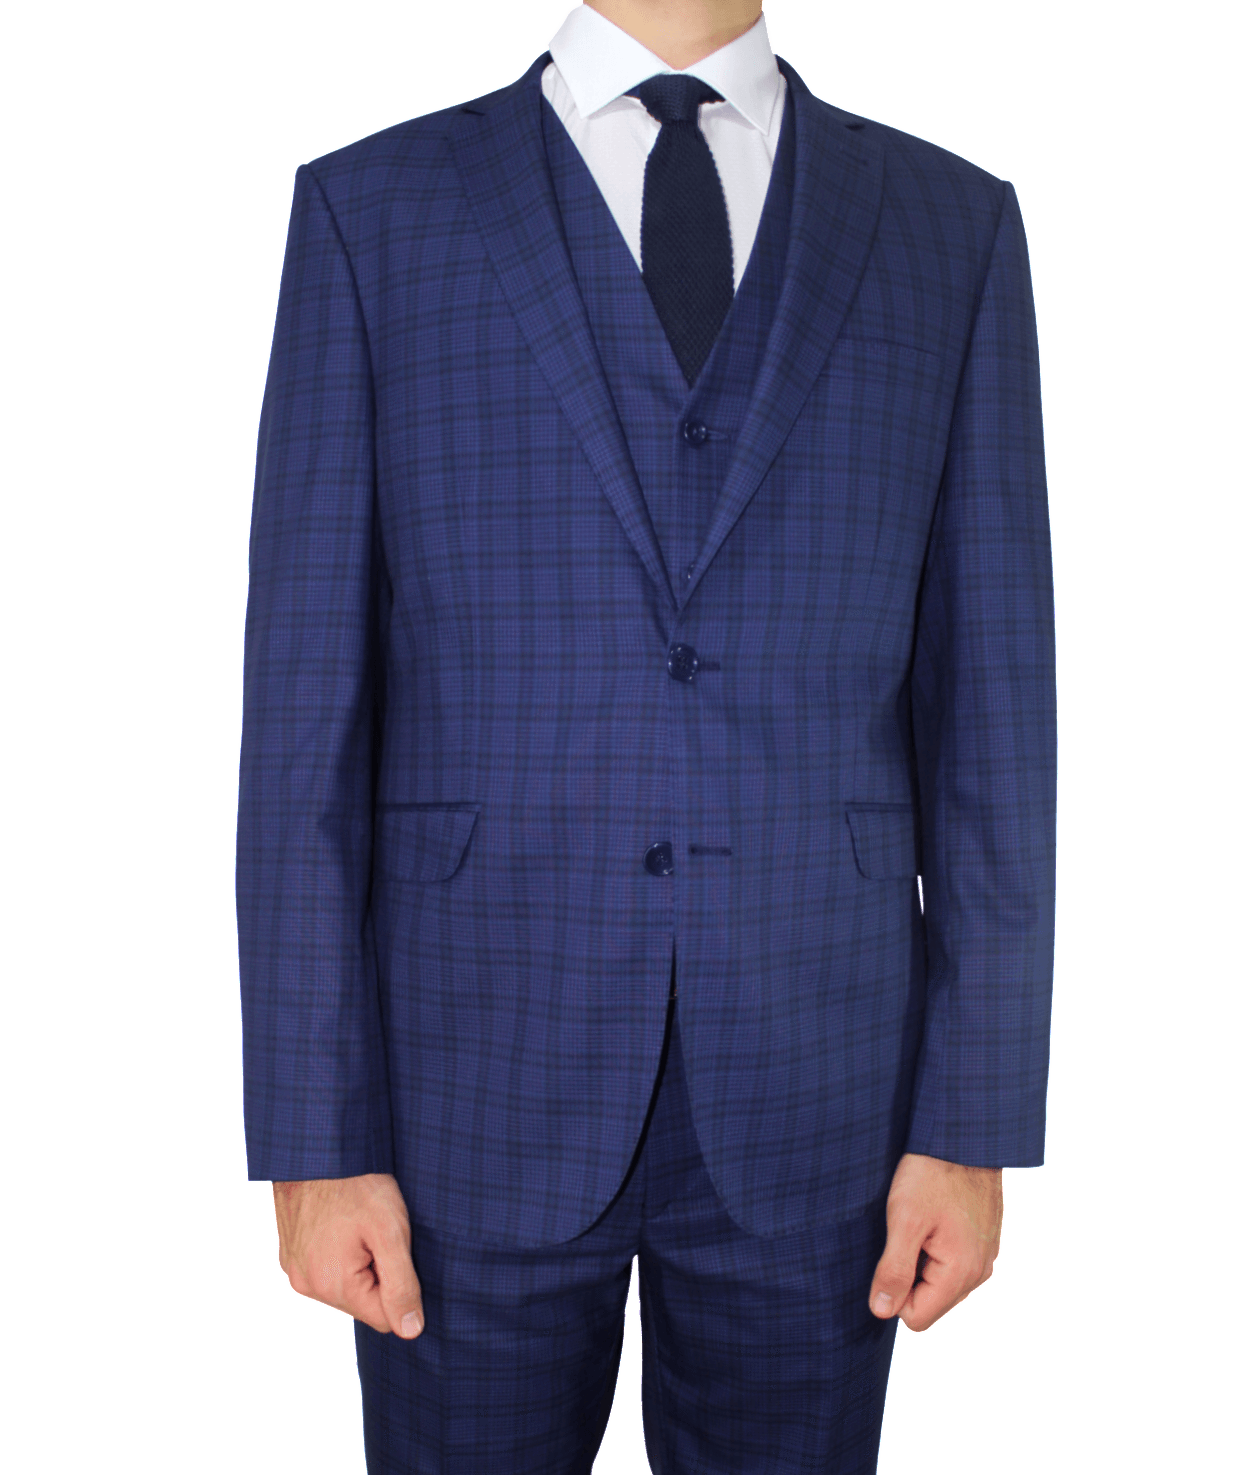 Blue Suit PNG Download Image